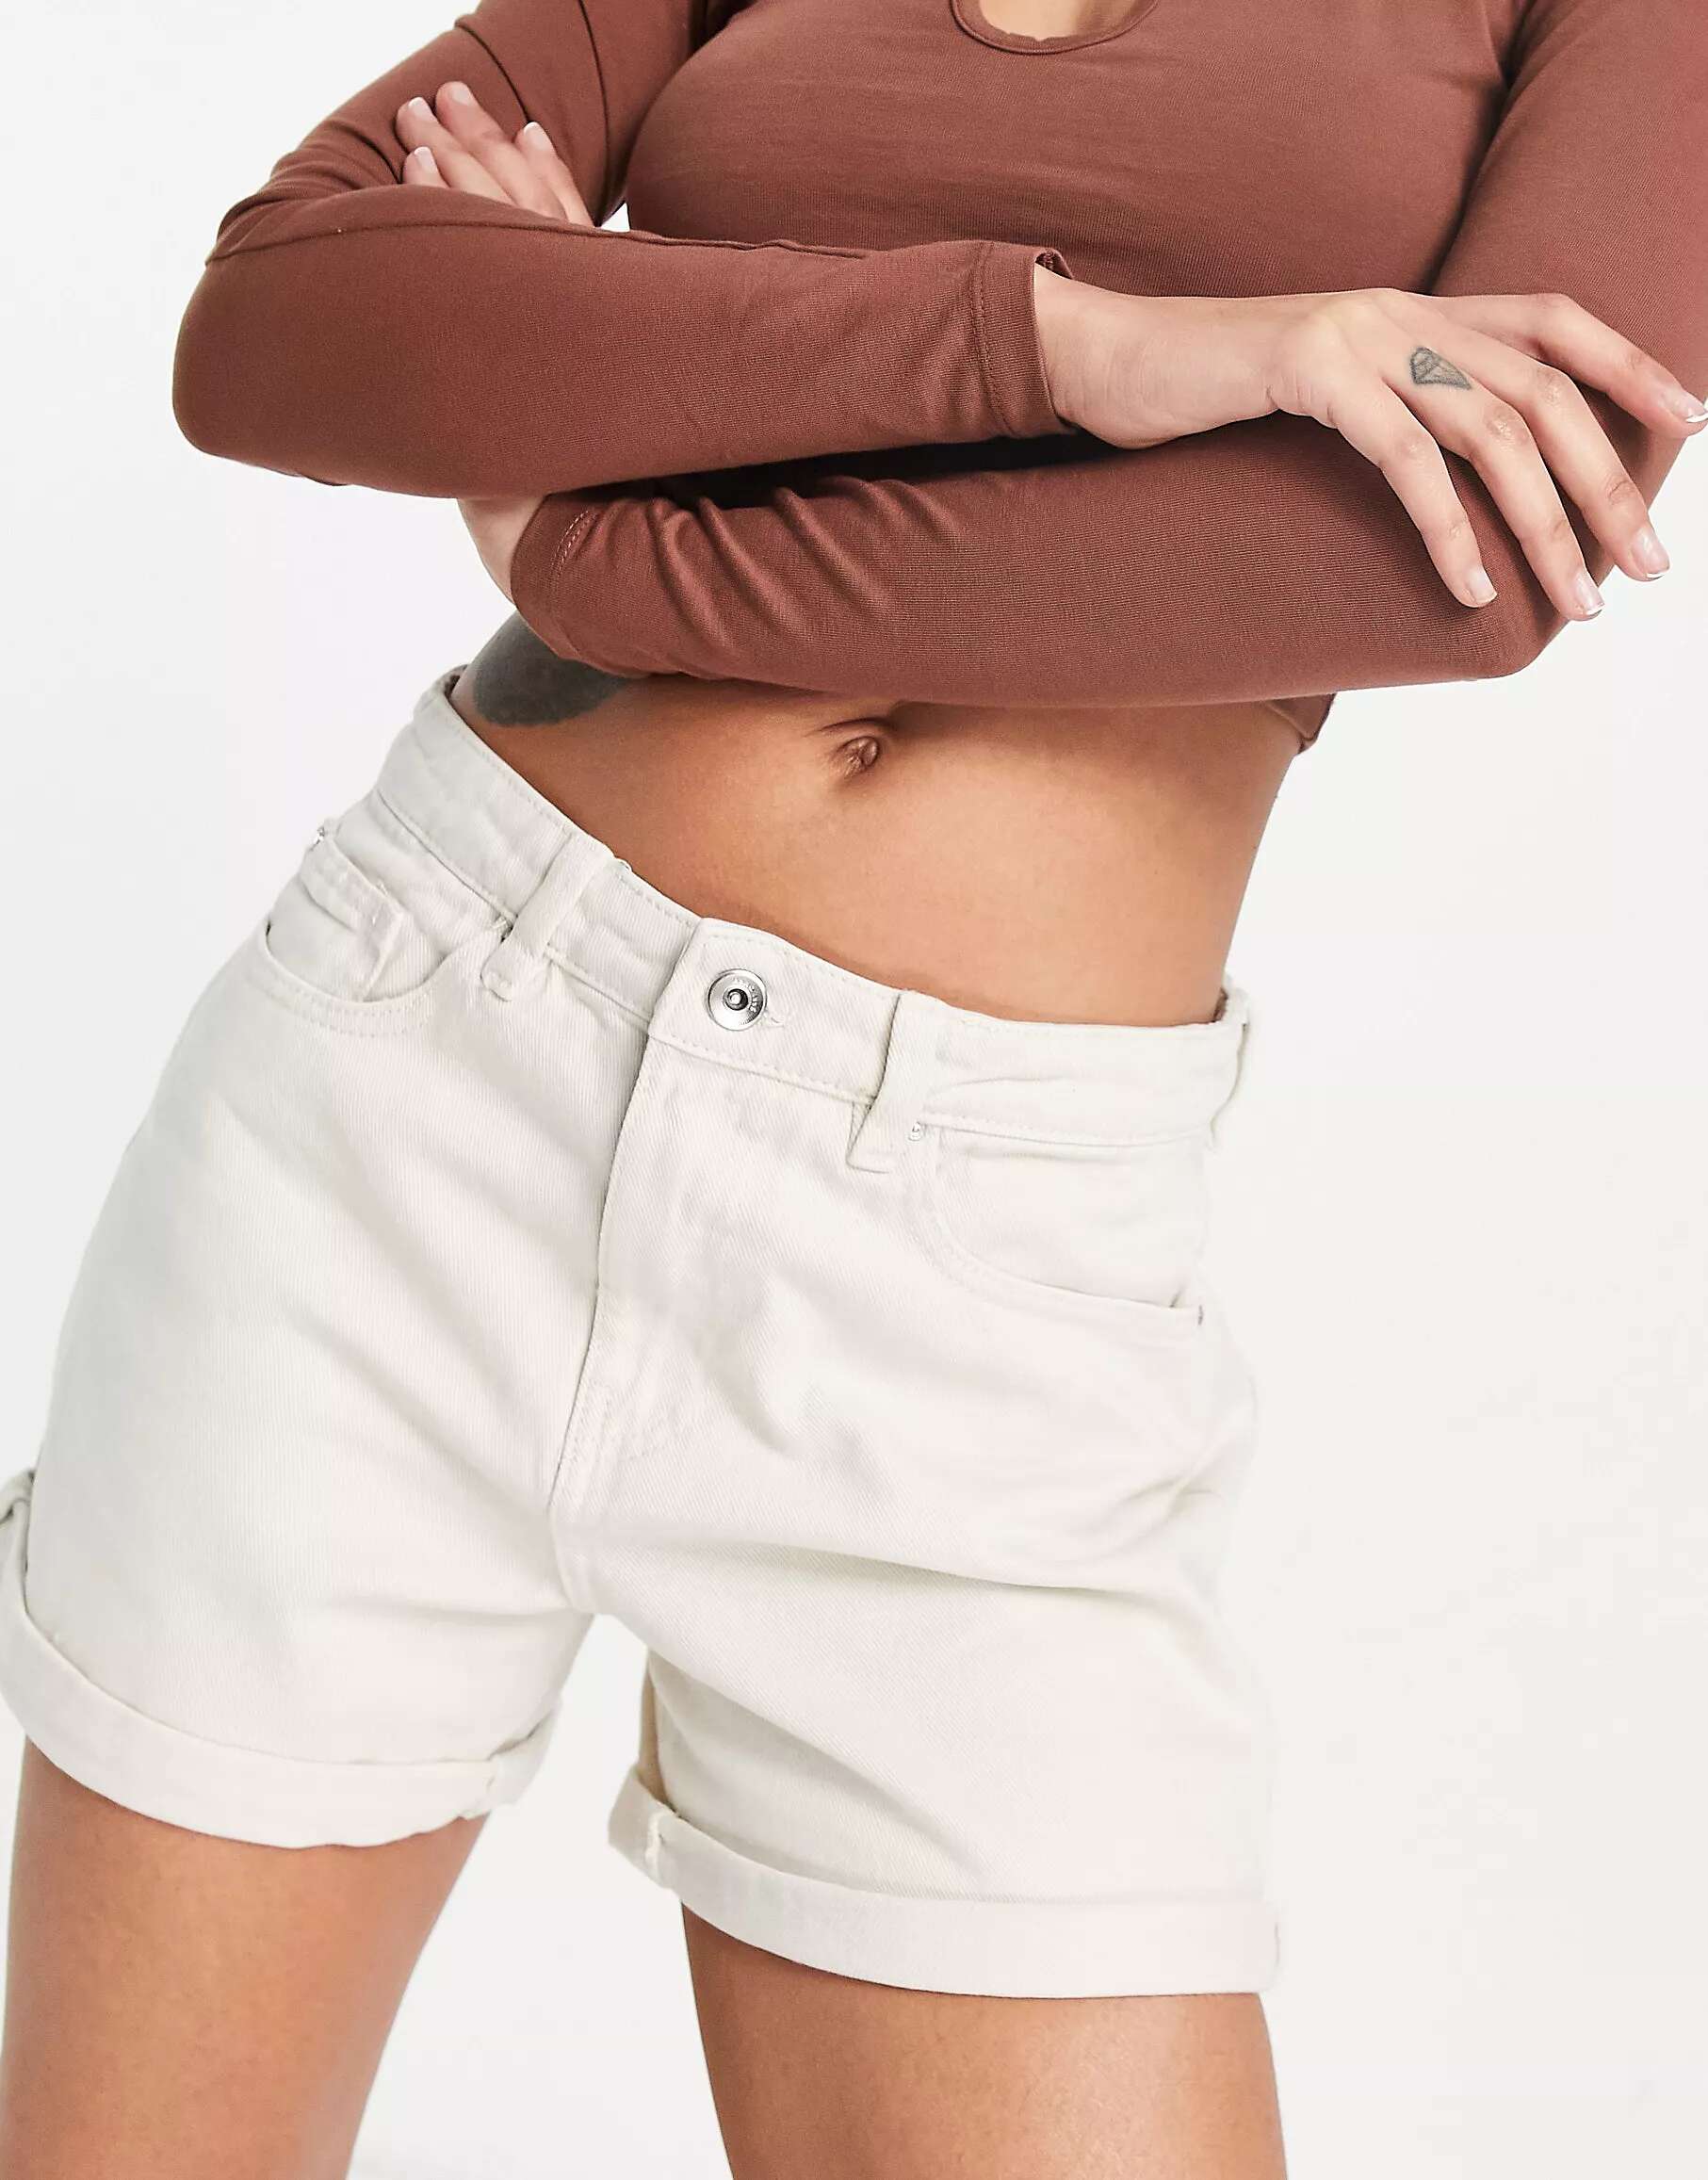 Джинсовые шорты «мама» Only Phine цвета экрю шорты promod джинсовые 44 размер